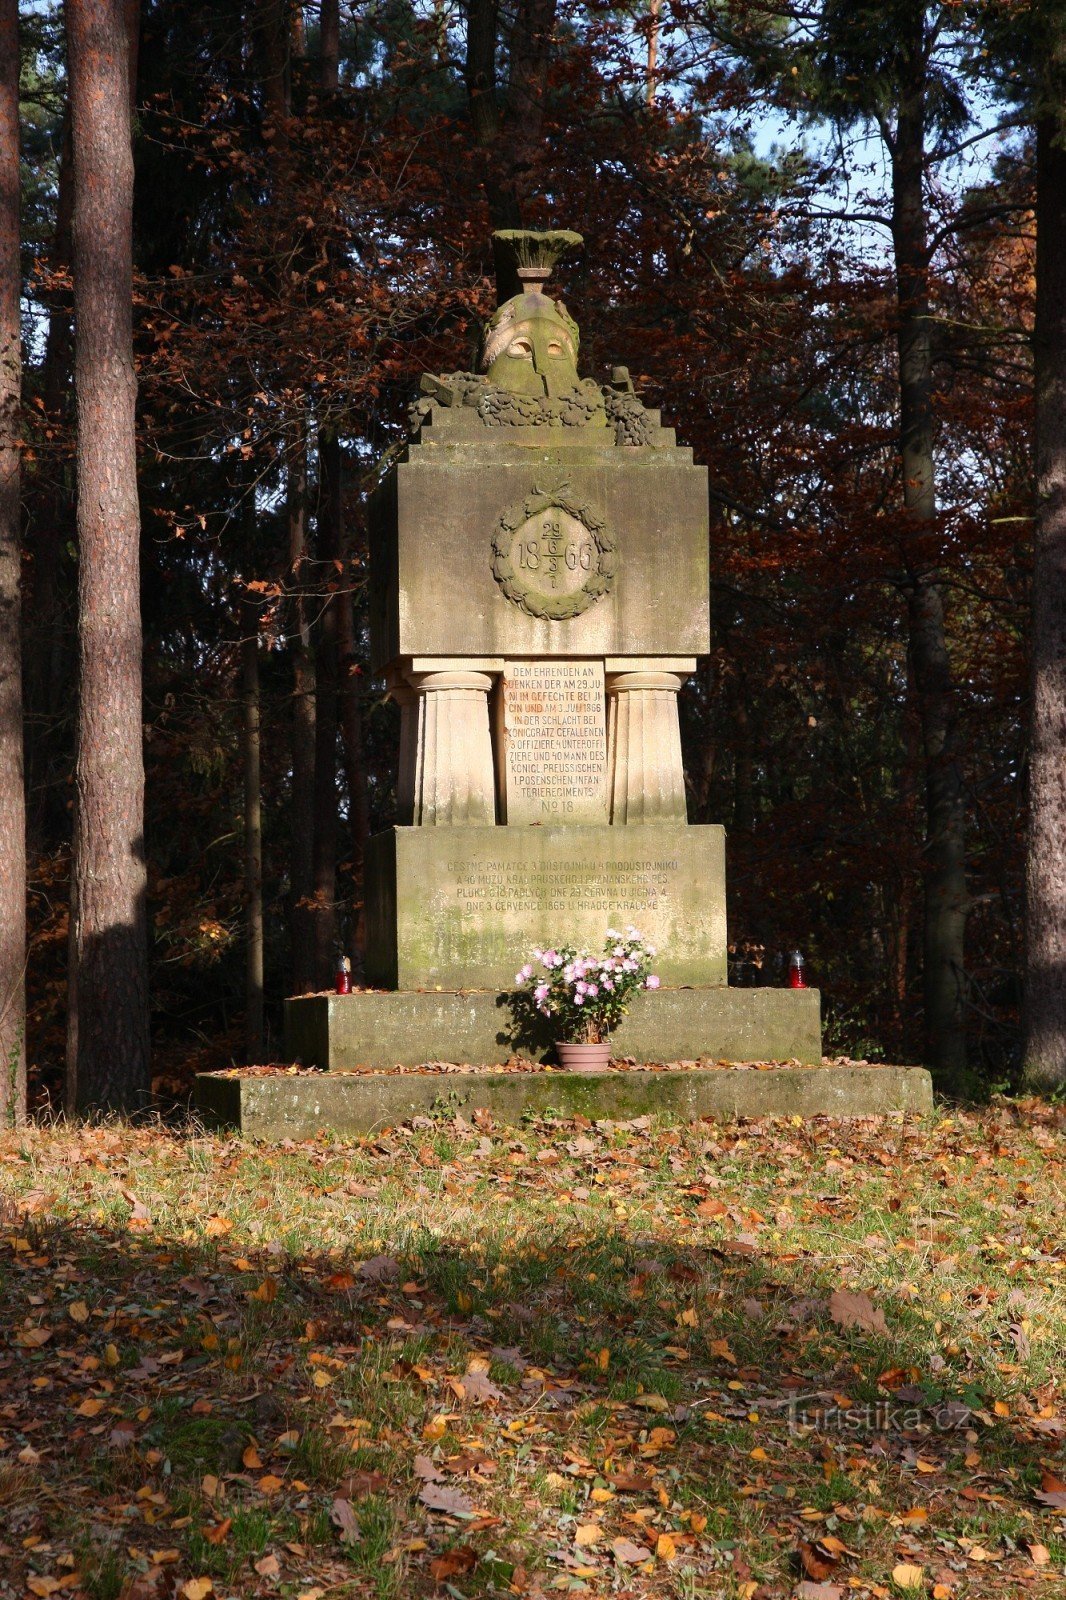 2-Memoriale a coloro che morirono nella guerra prussiano-austriaca del 1866 a Prachov